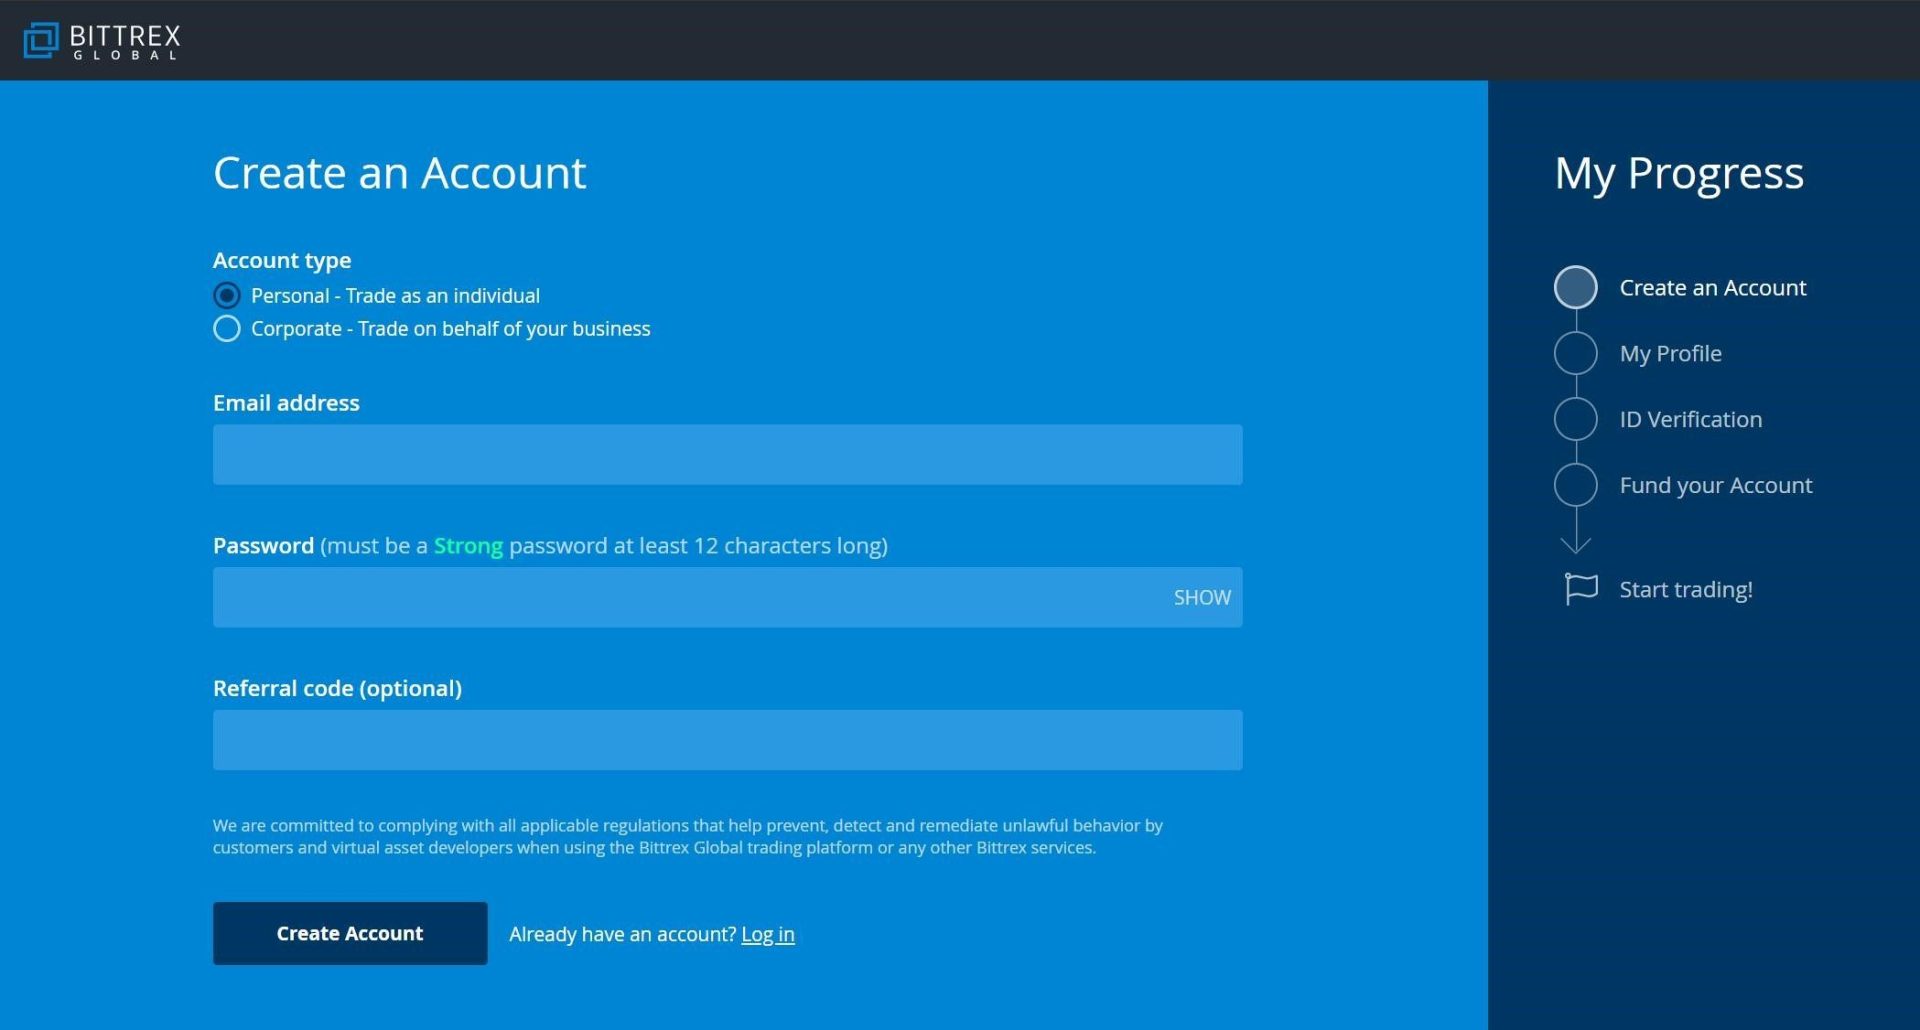 Vui lòng cung cấp email và mật khẩu để đăng ký tài khoản Bittrex.